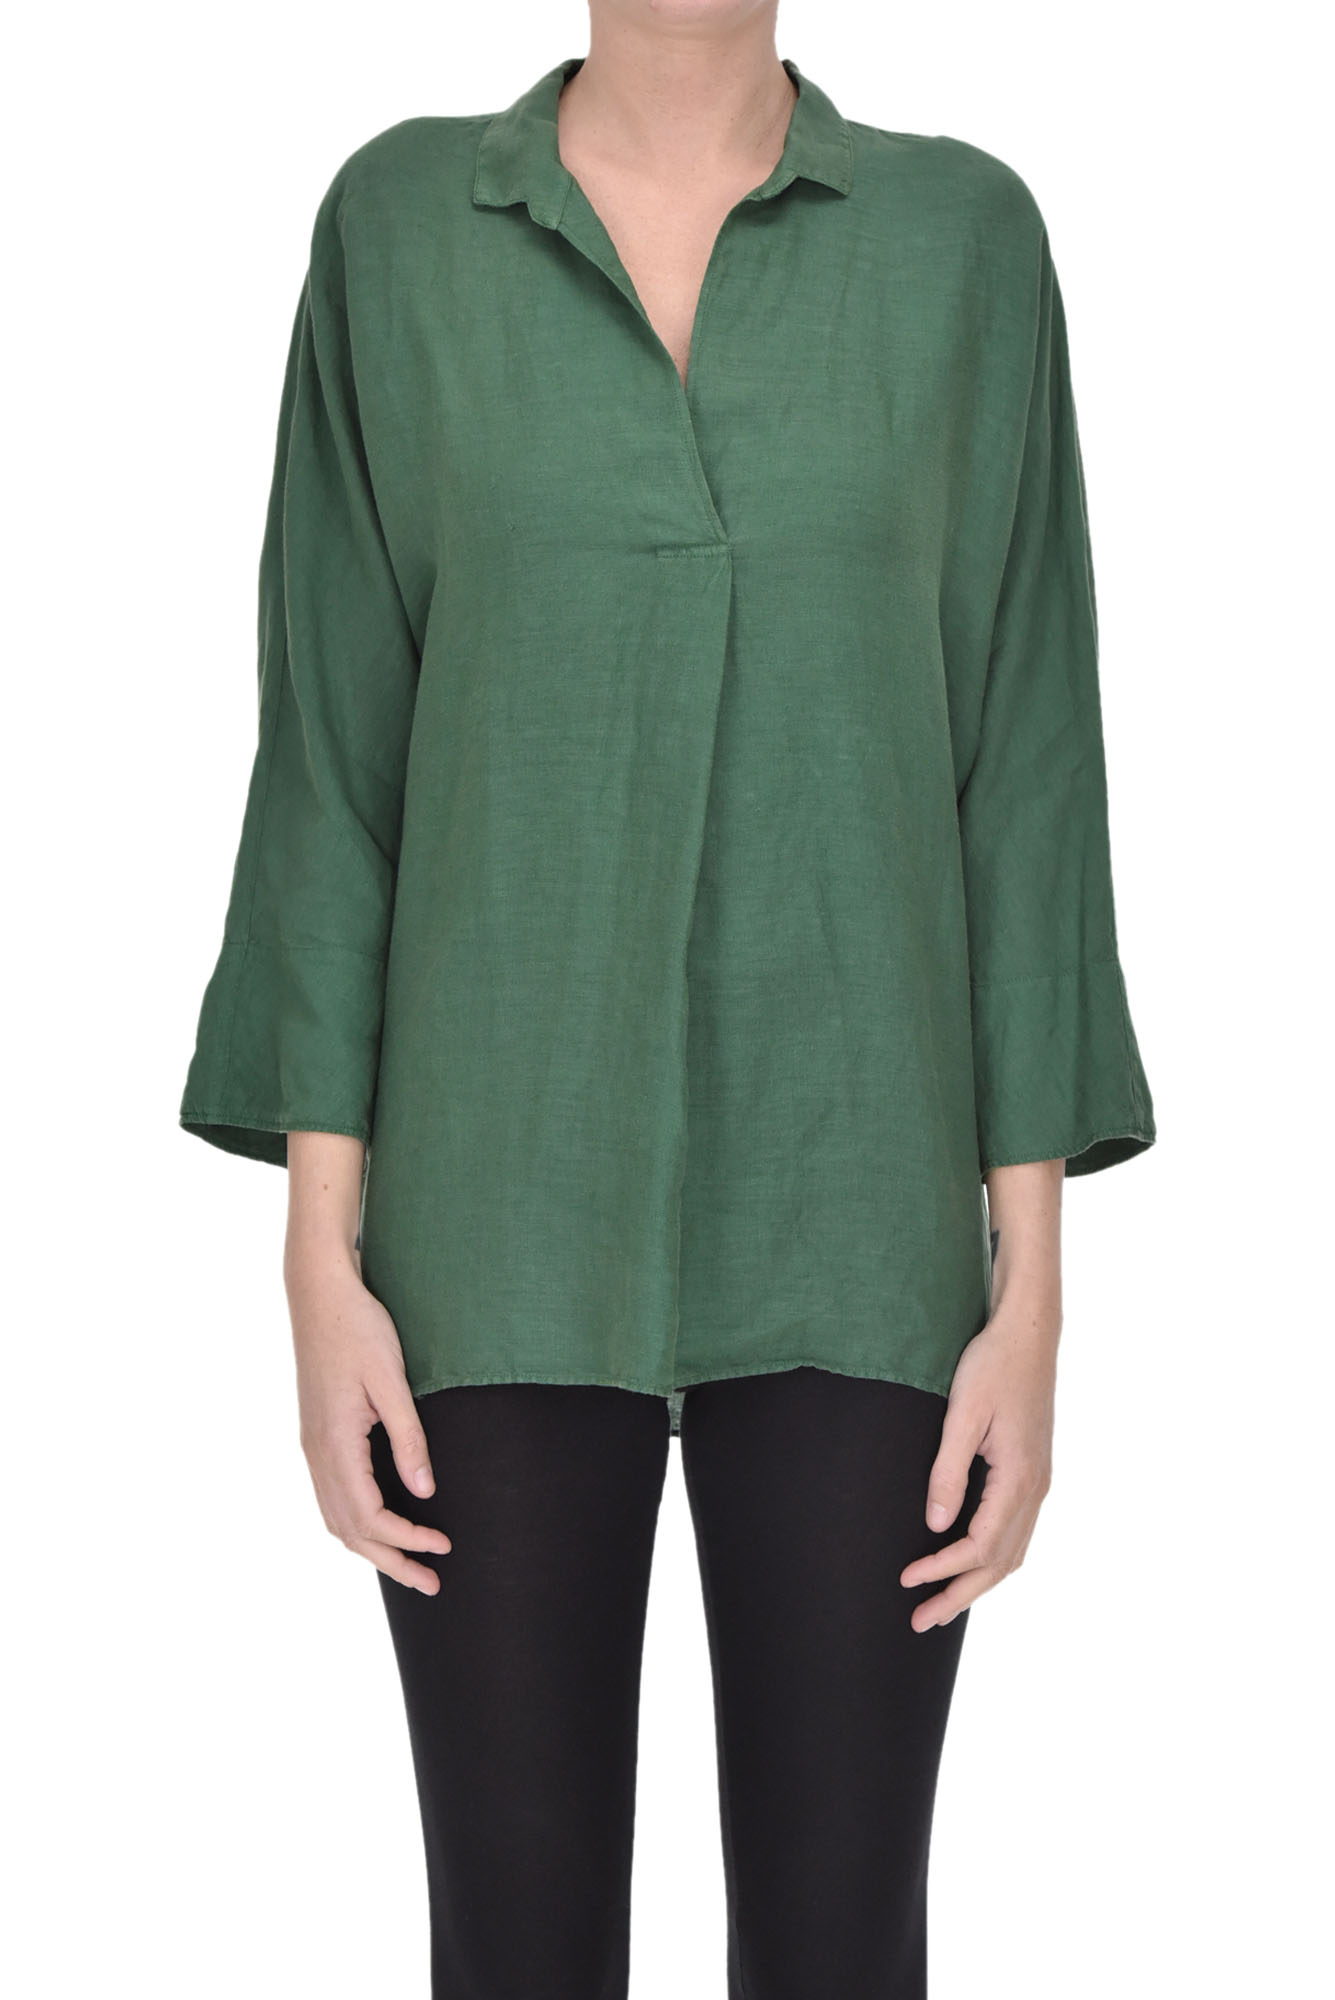 Caliban Linen blouse - Buy online on Glamest Fashion Outlet - Glamest